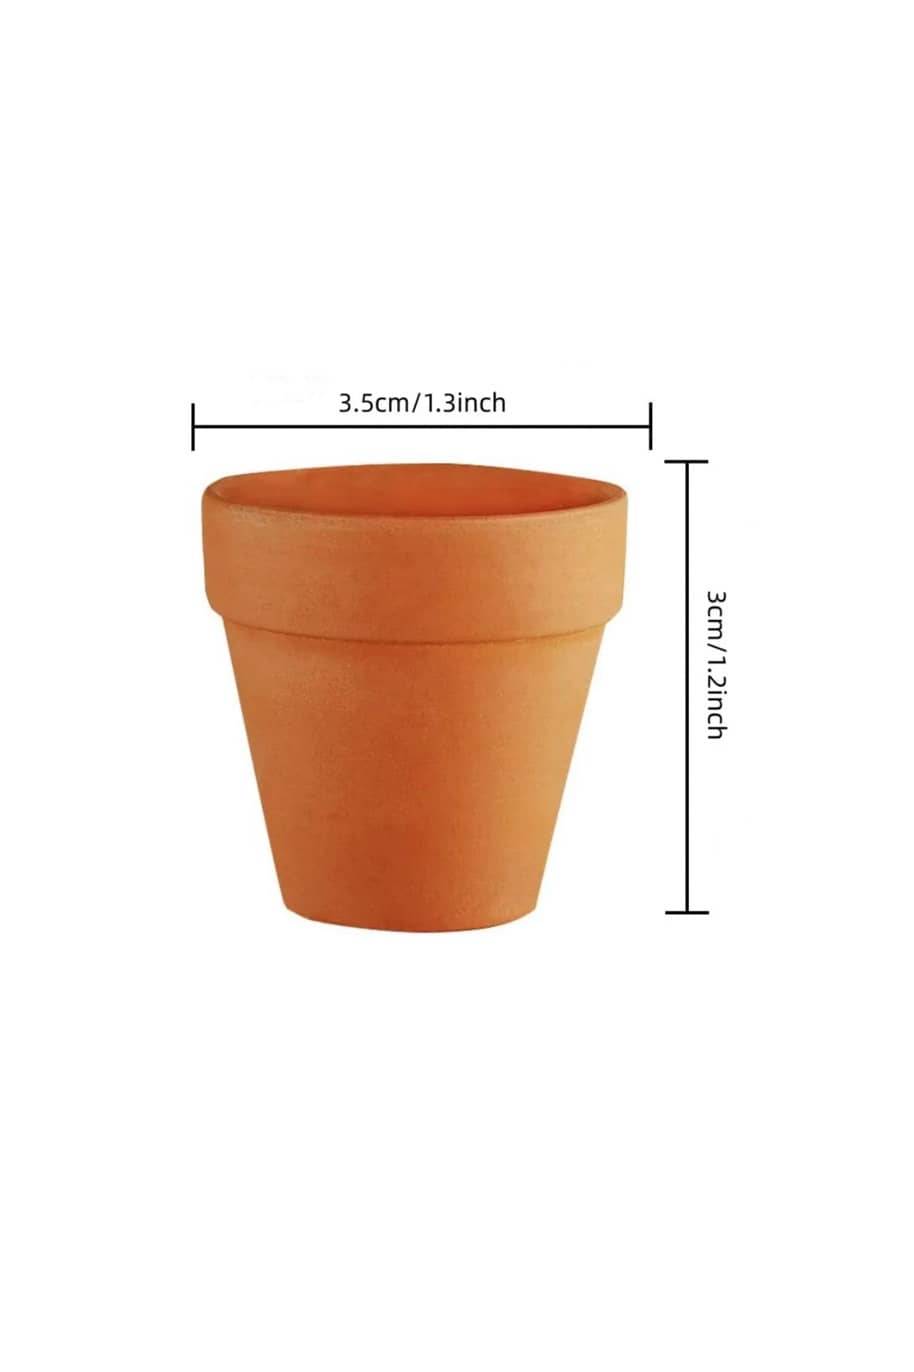 Tiny Terracotta Pot